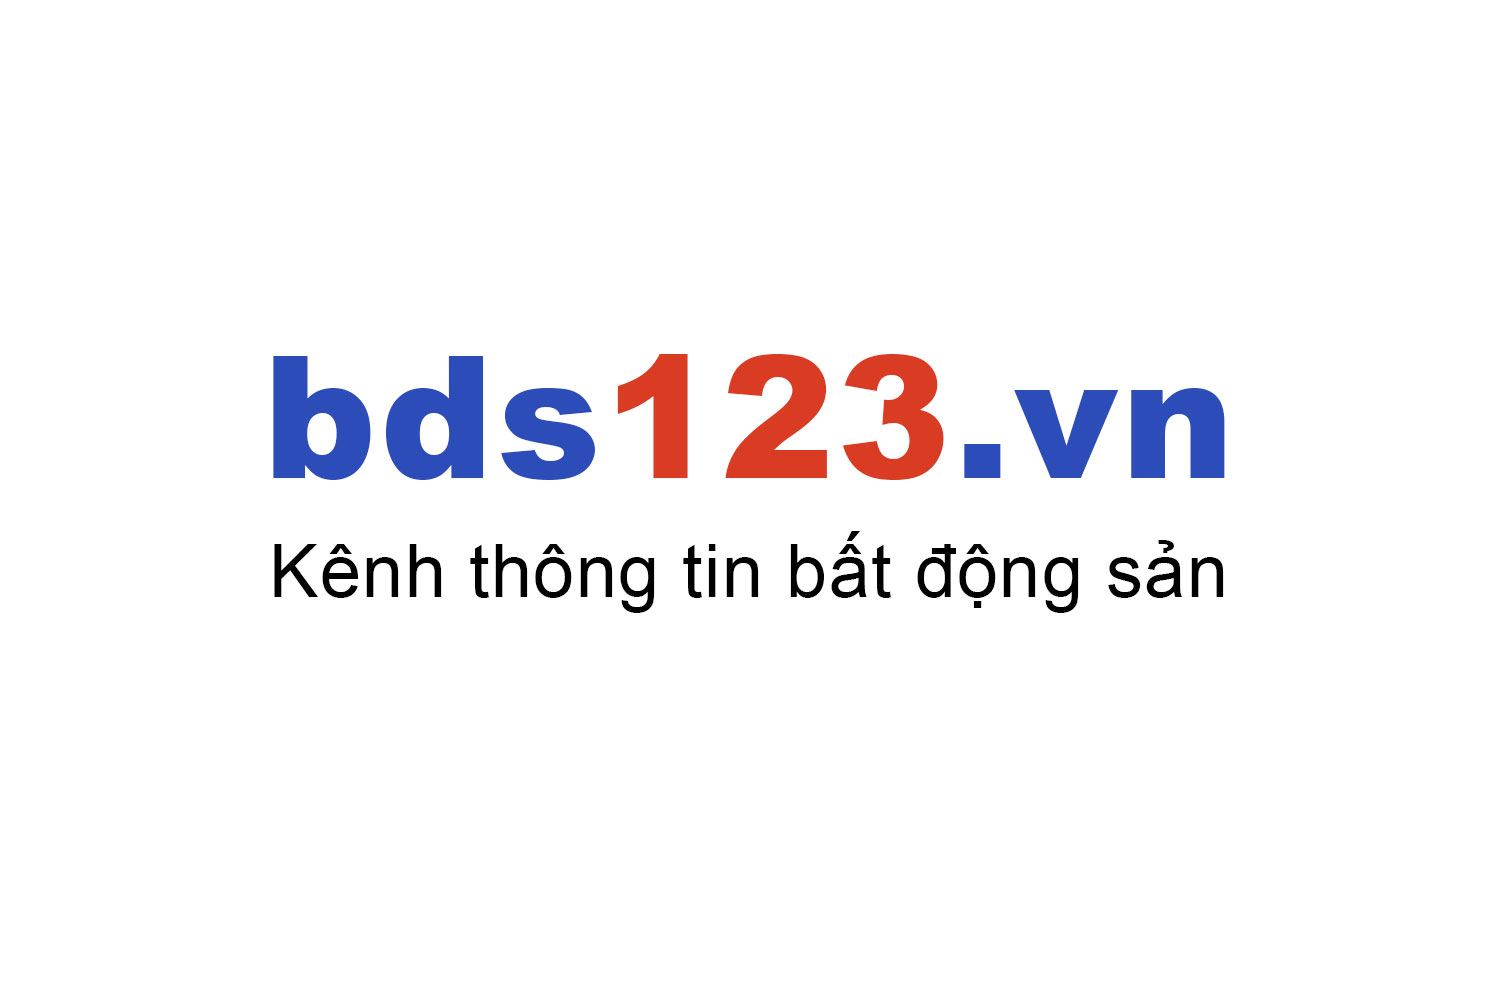 Mua bán căn hộ Tân Phước Plaza ưu đãi giá tốt T10/2022 - Bds123.vn